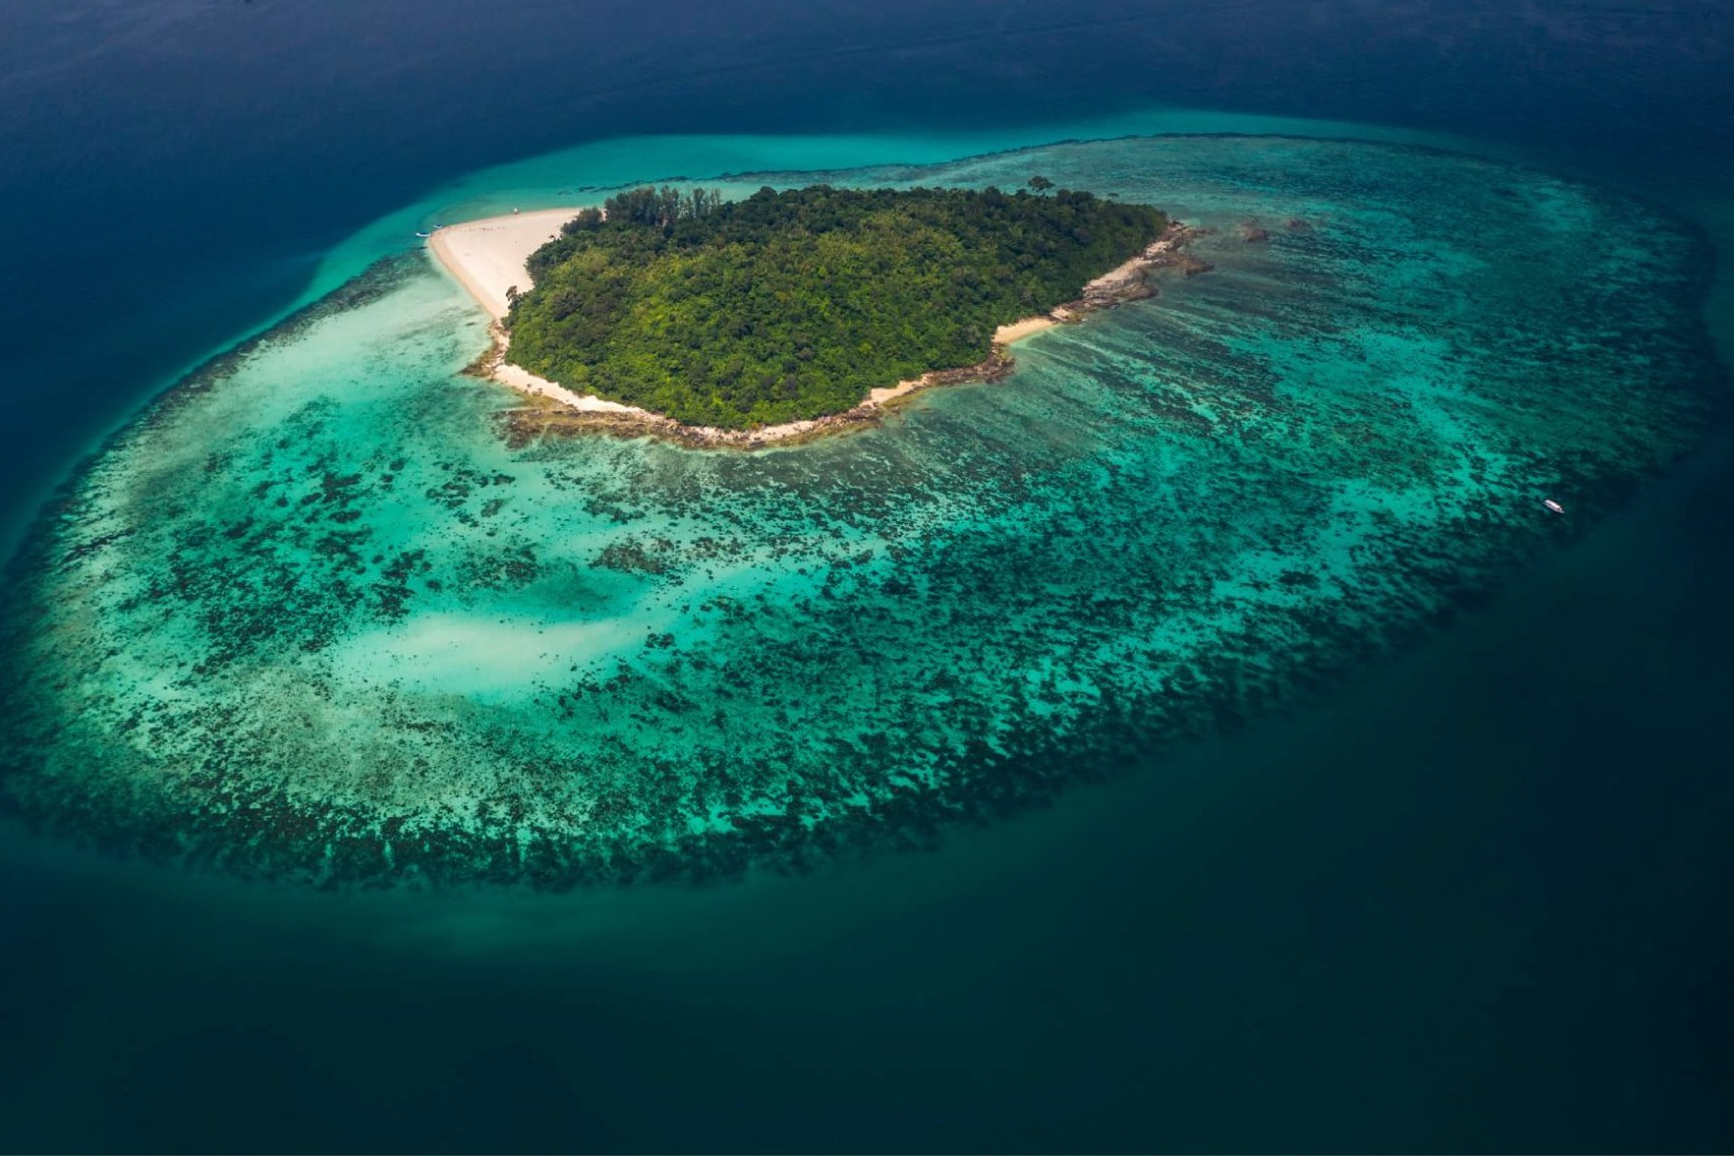 เที่ยววันเดียว เกาะพีพี-อ่าวปิเละ-เกาะไผ่  โดยเรือเร็ว